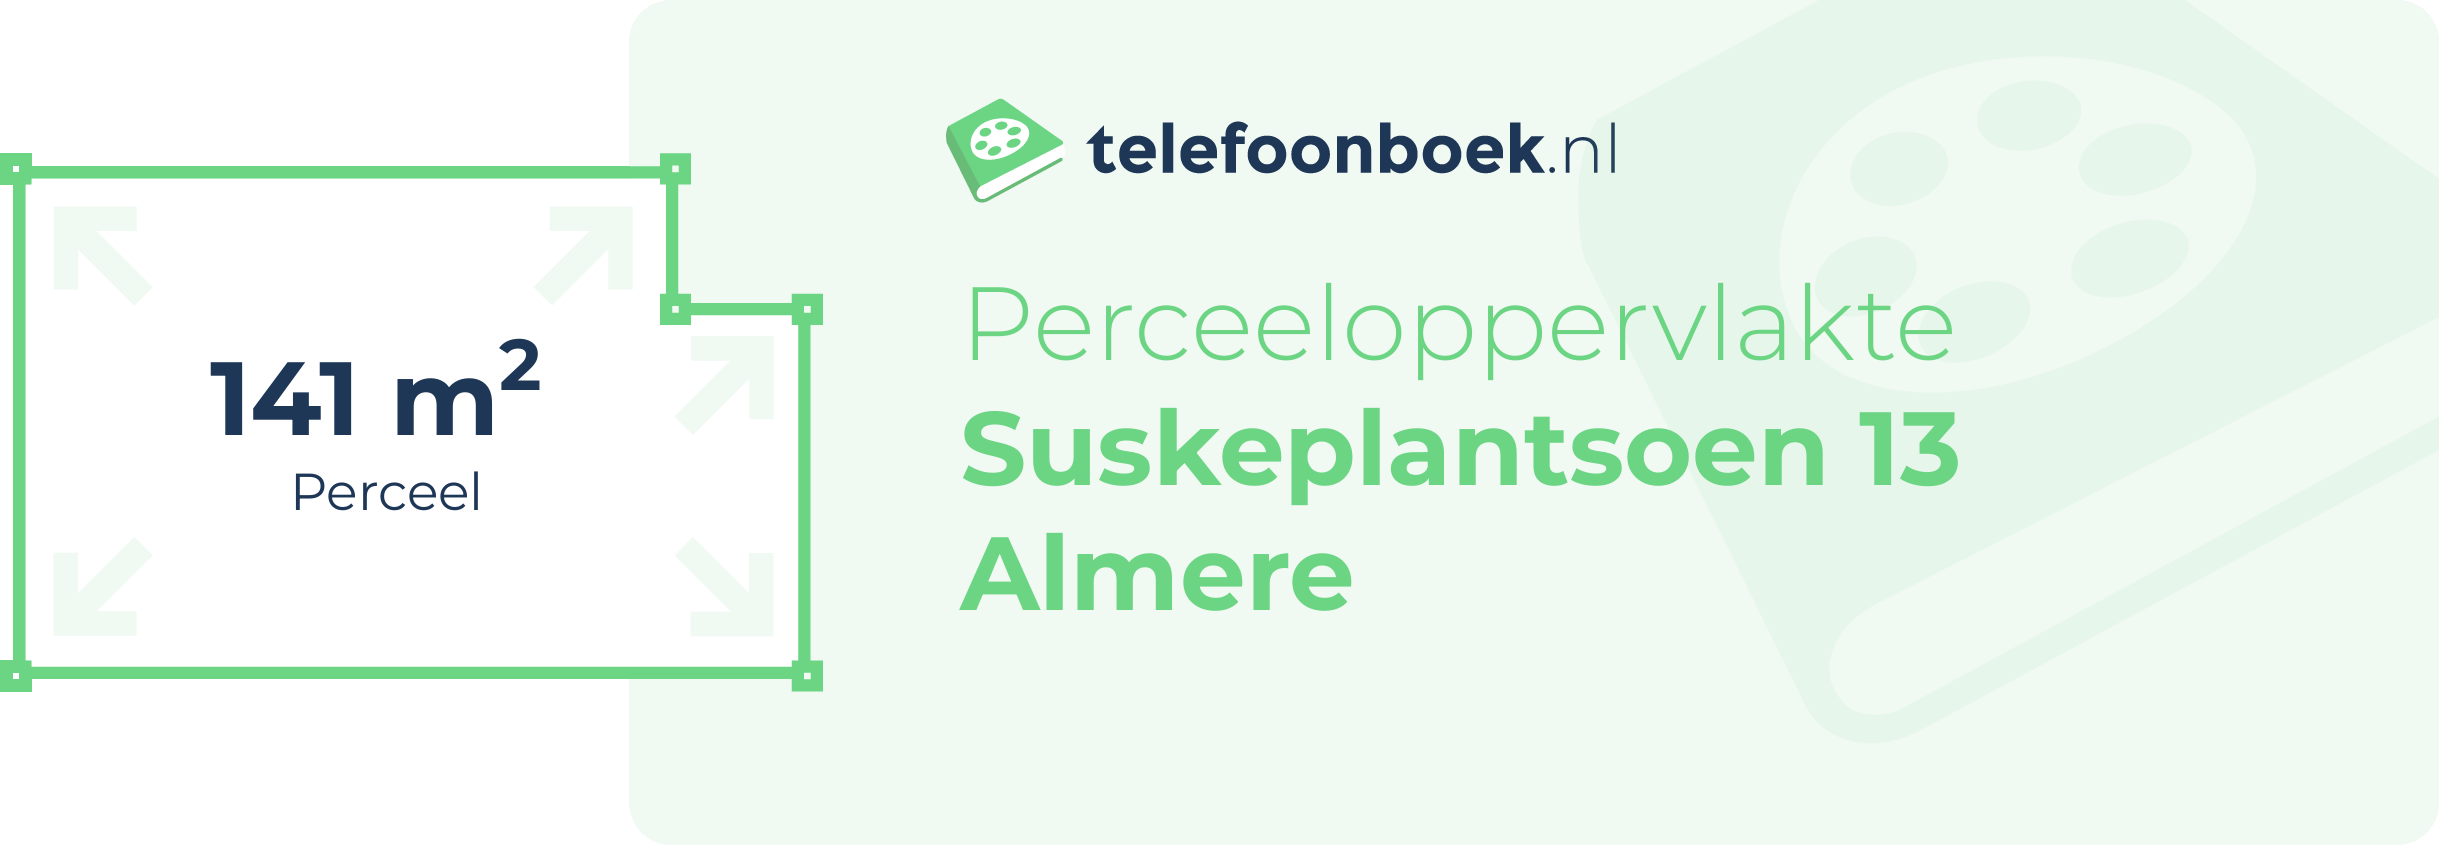 Perceeloppervlakte Suskeplantsoen 13 Almere